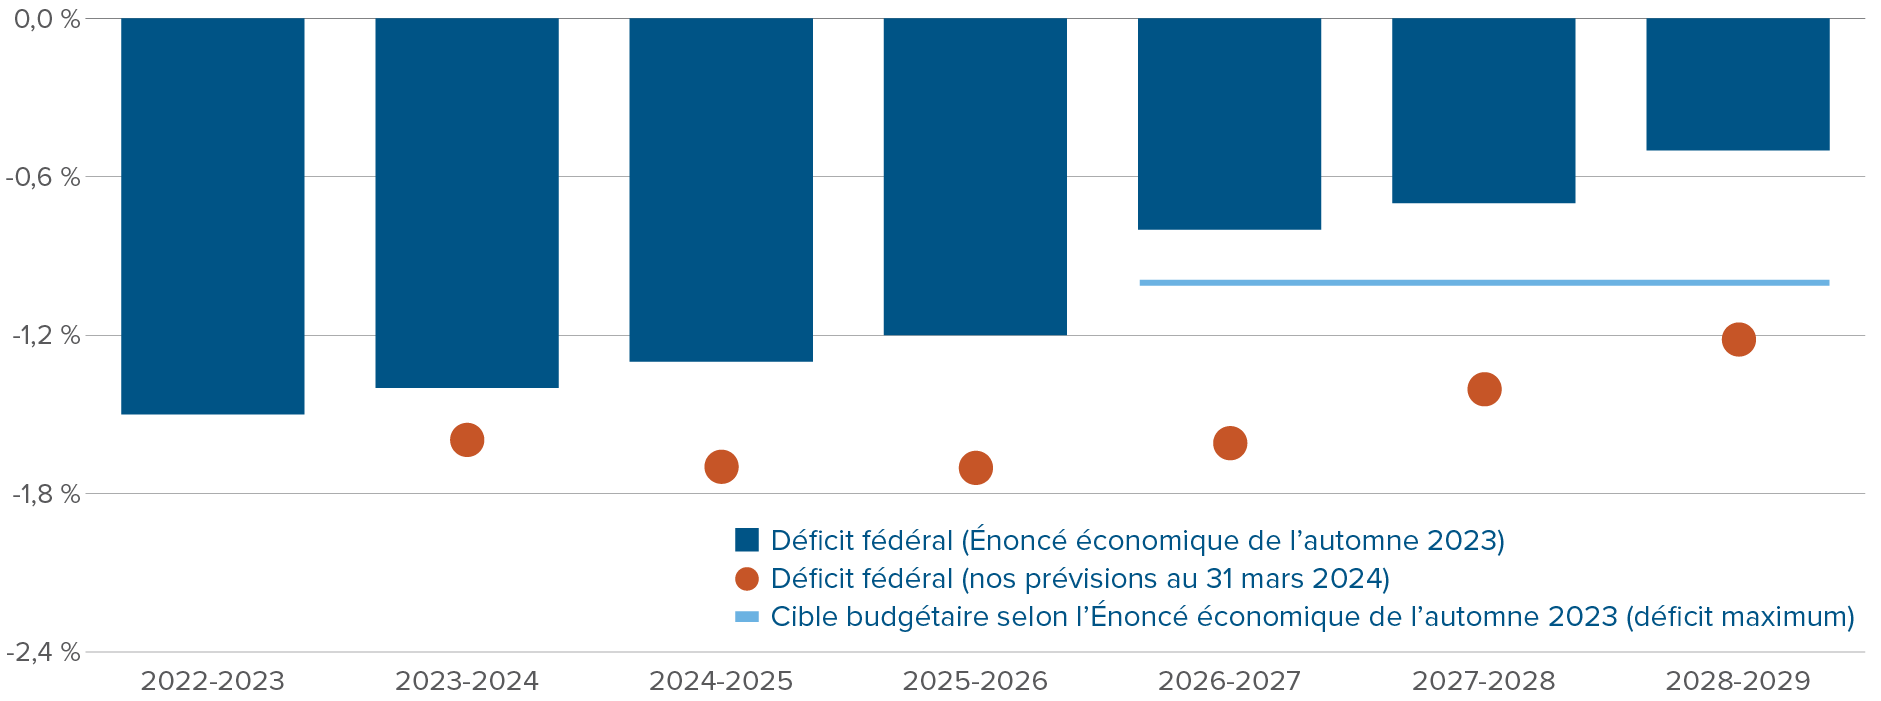 Graphique : Déficit fédéral en pourcentage du PIB - Nous prévoyons que les déficits resteront égaux ou supérieurs à 1,5 % du PIB jusqu’en 2027-28, et qu’ils atteindront encore 1,2 % du PIB en 2028-29.